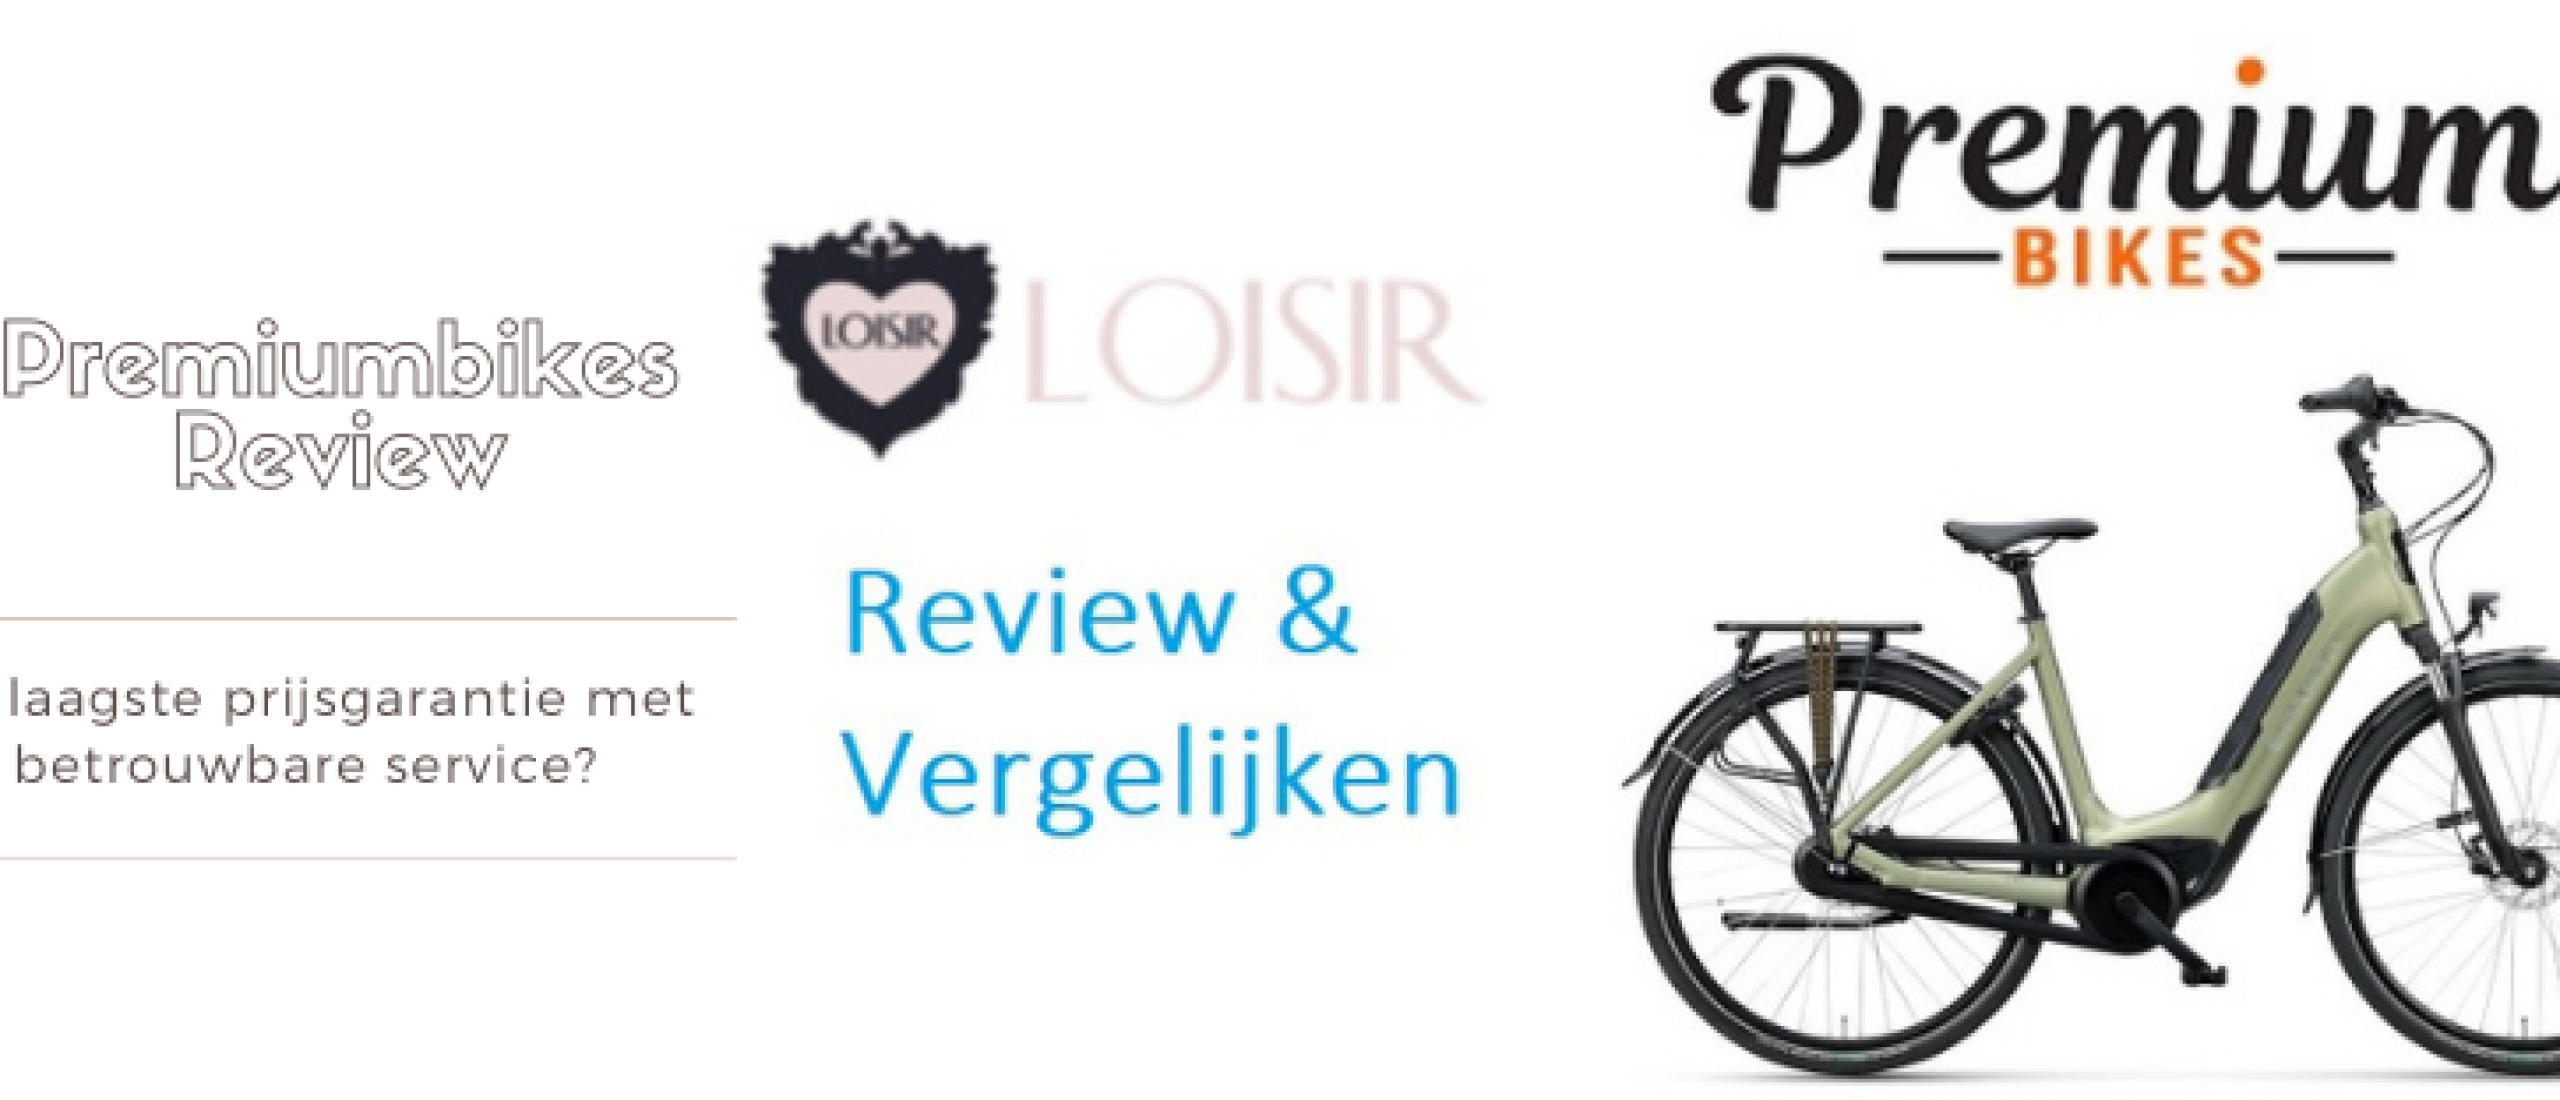 Premiumbikes review en vergelijken: Goede Prijs Kwaliteit?